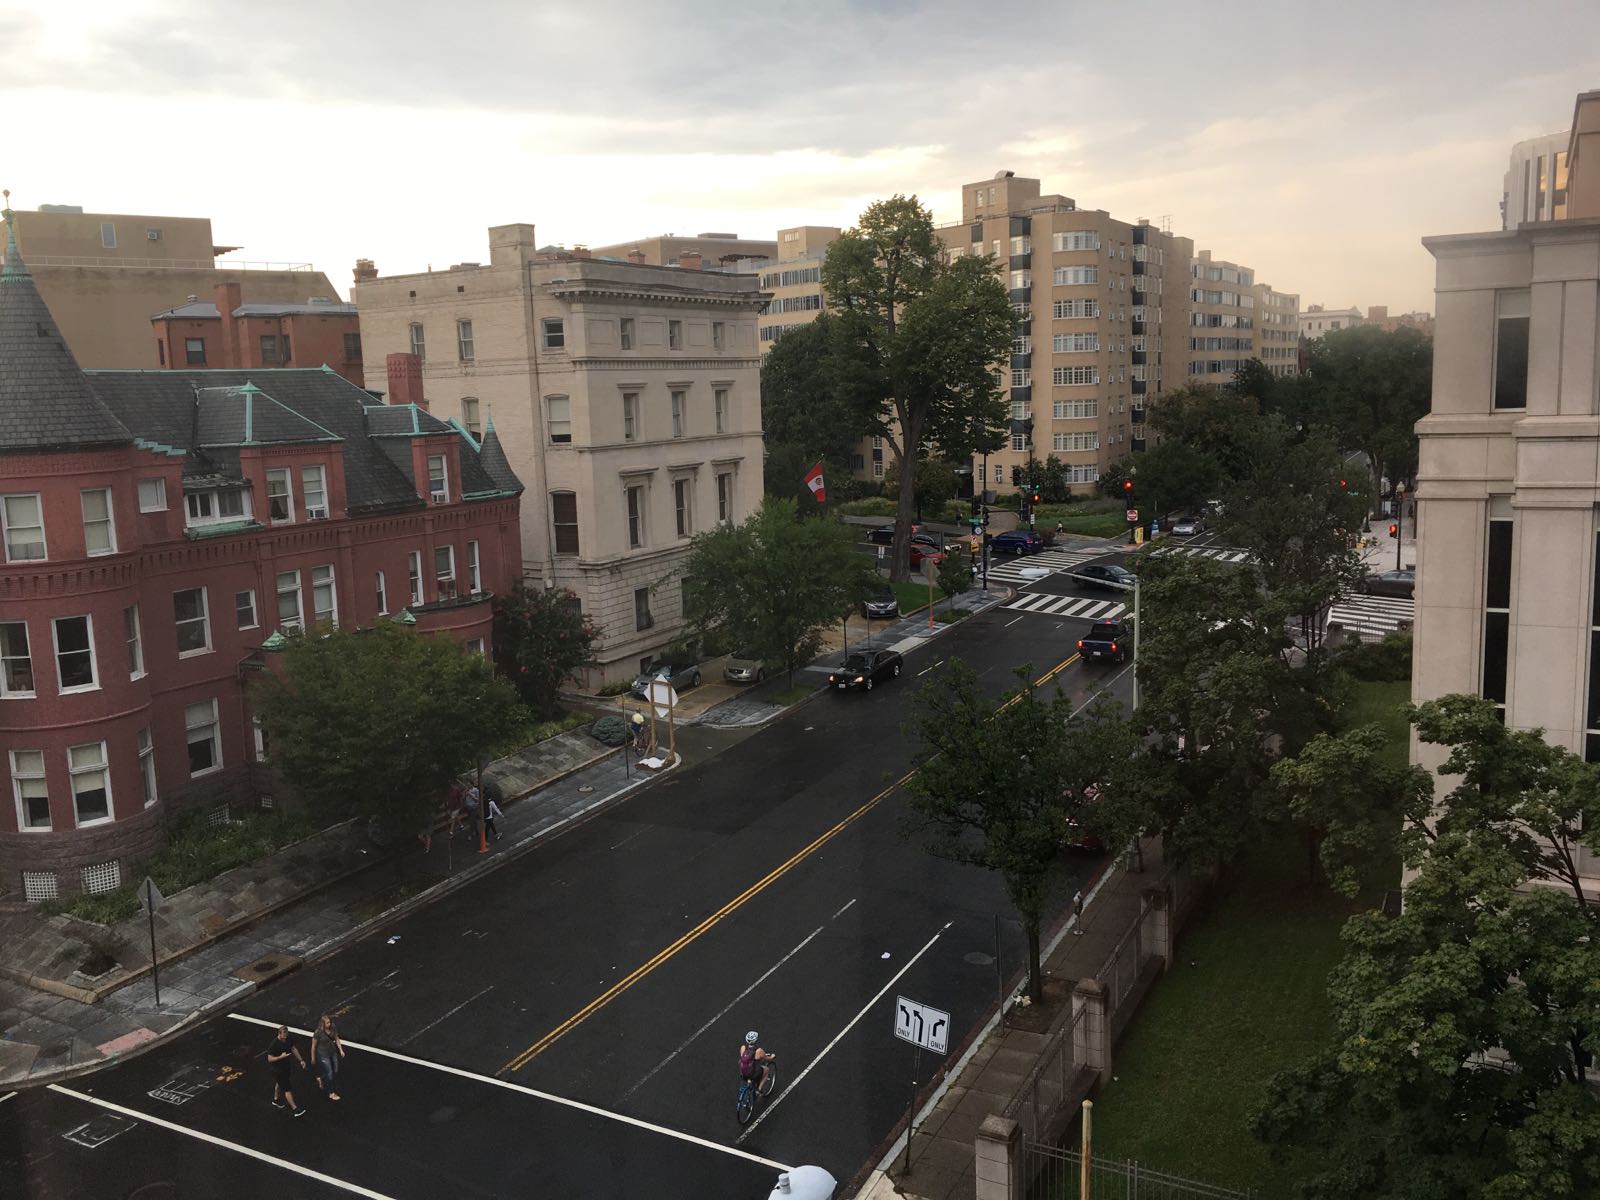 Washington, D.C干干净净的城市，雨后的华盛顿格外映射出华